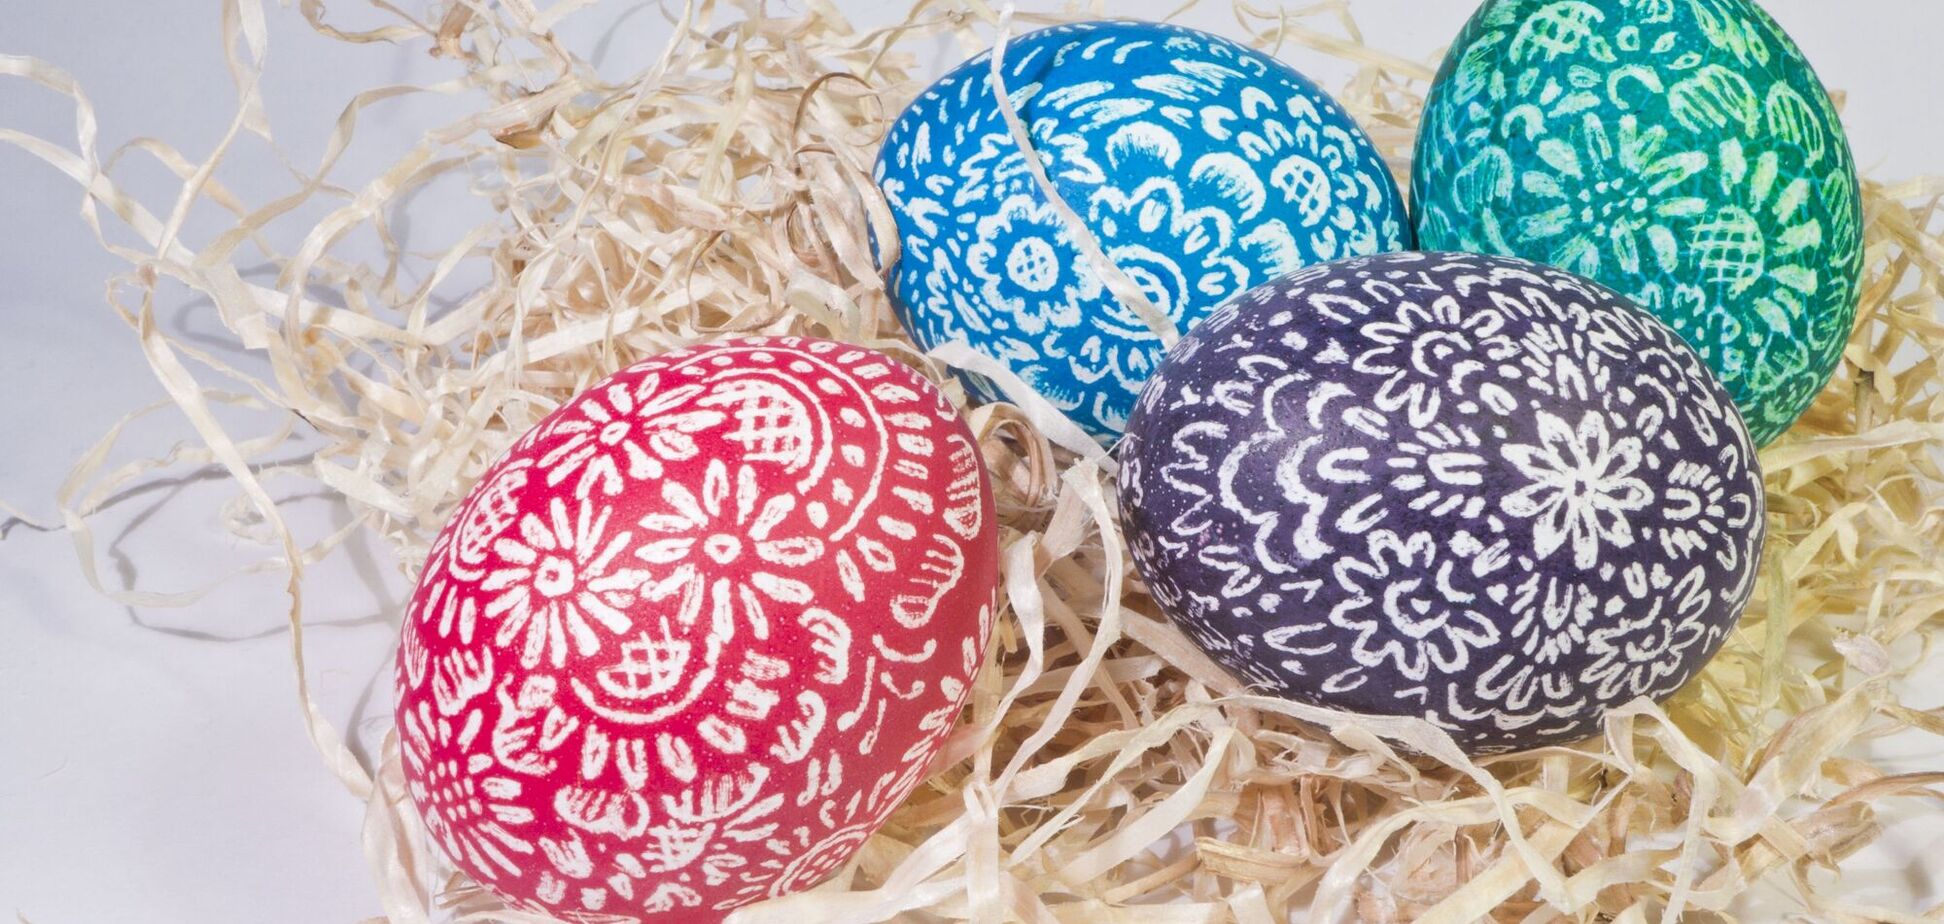 Яйцо в христианстве олицетворяет символ гроба и воскресения